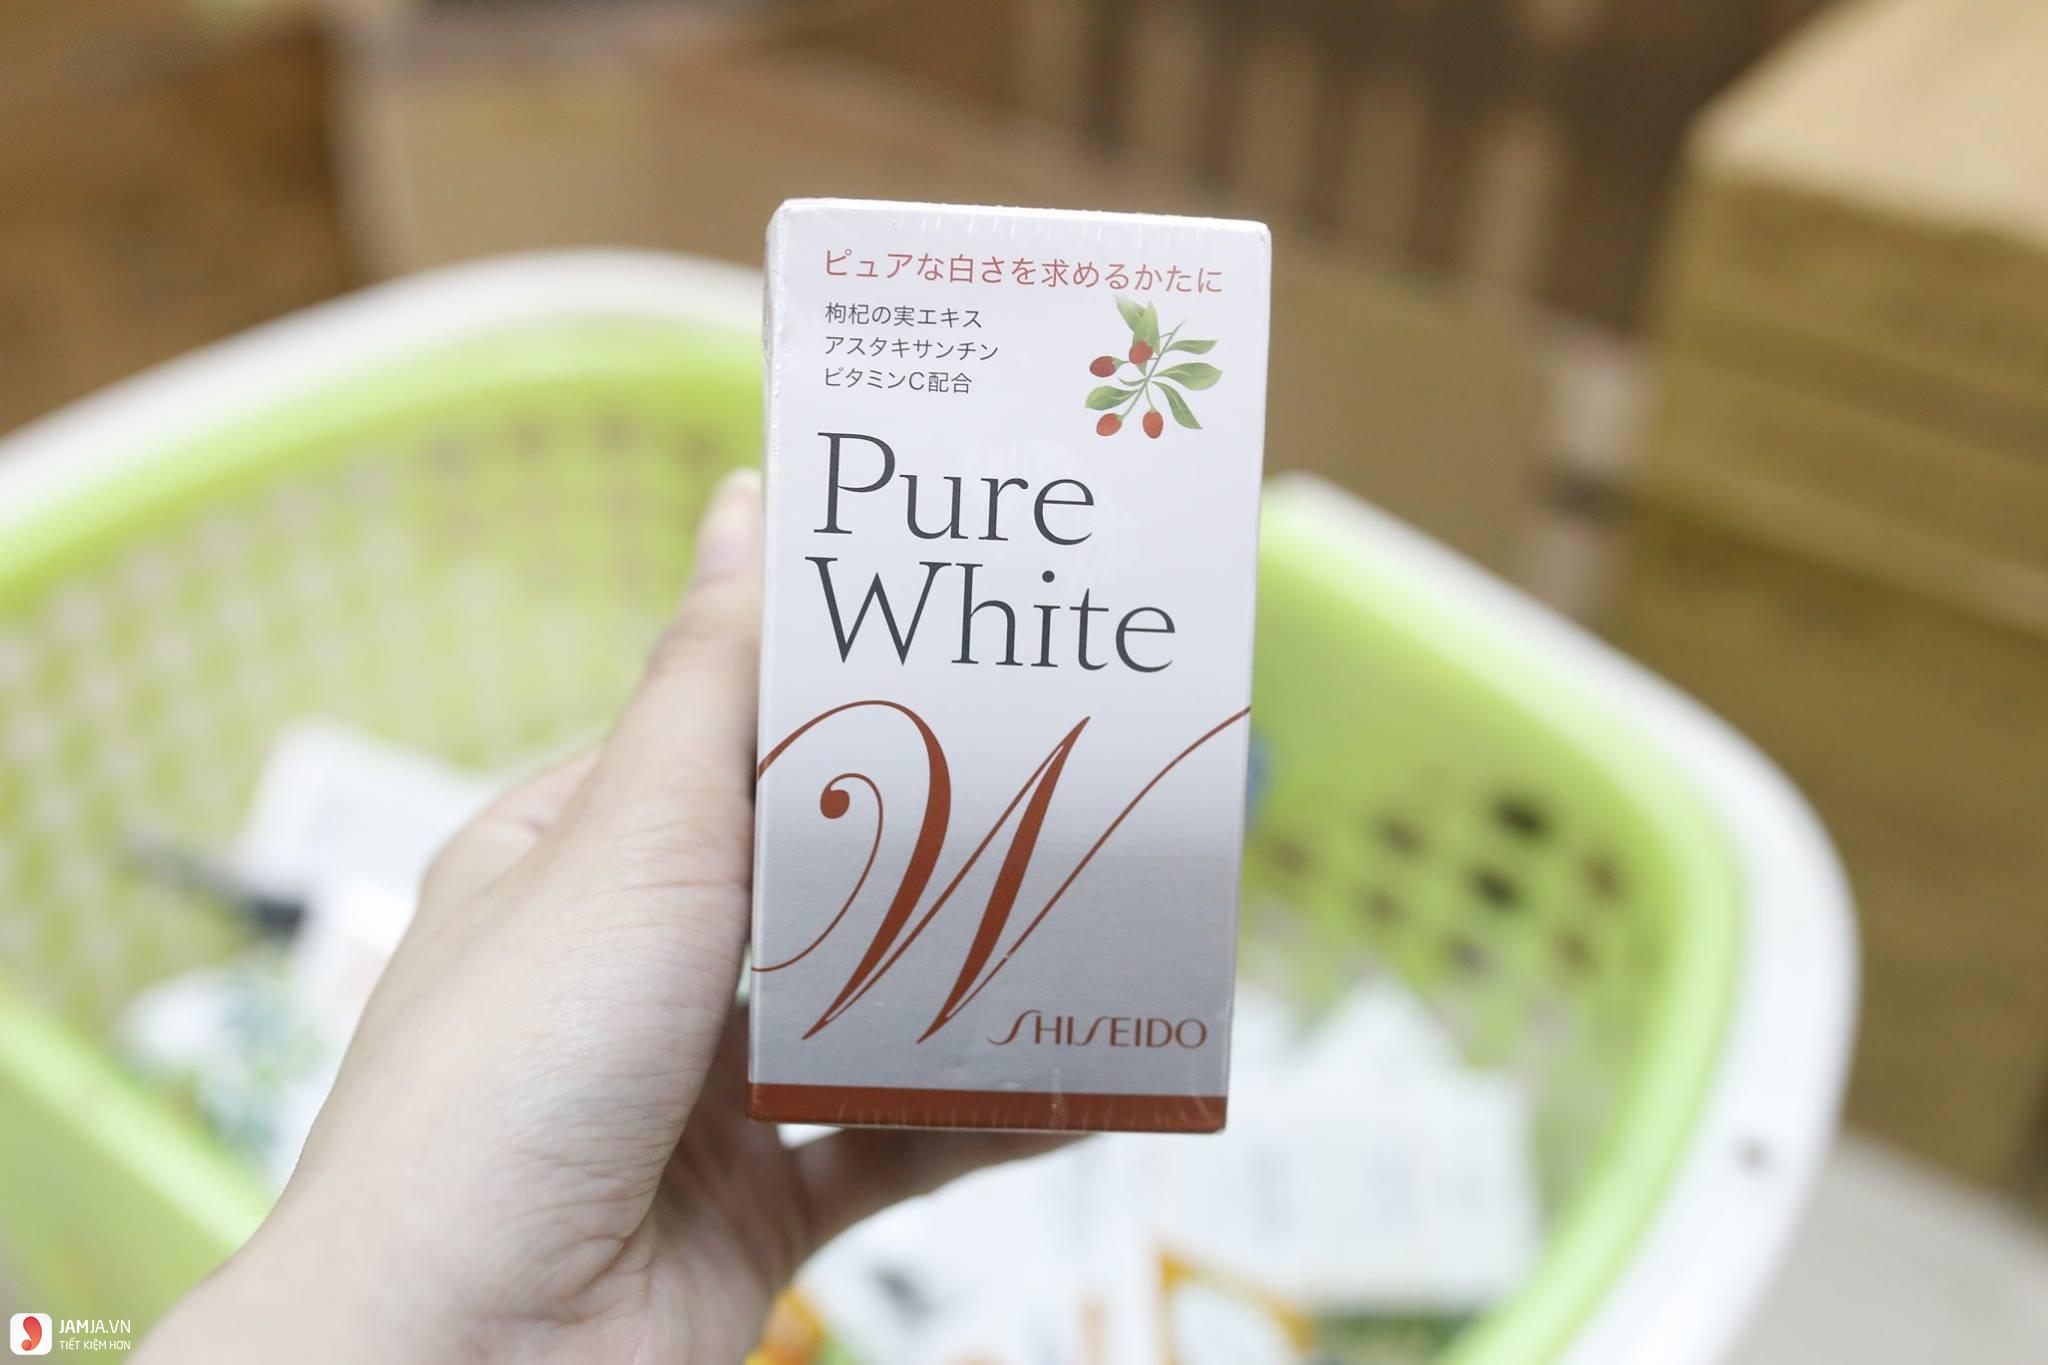 Shiseido Pure White 2